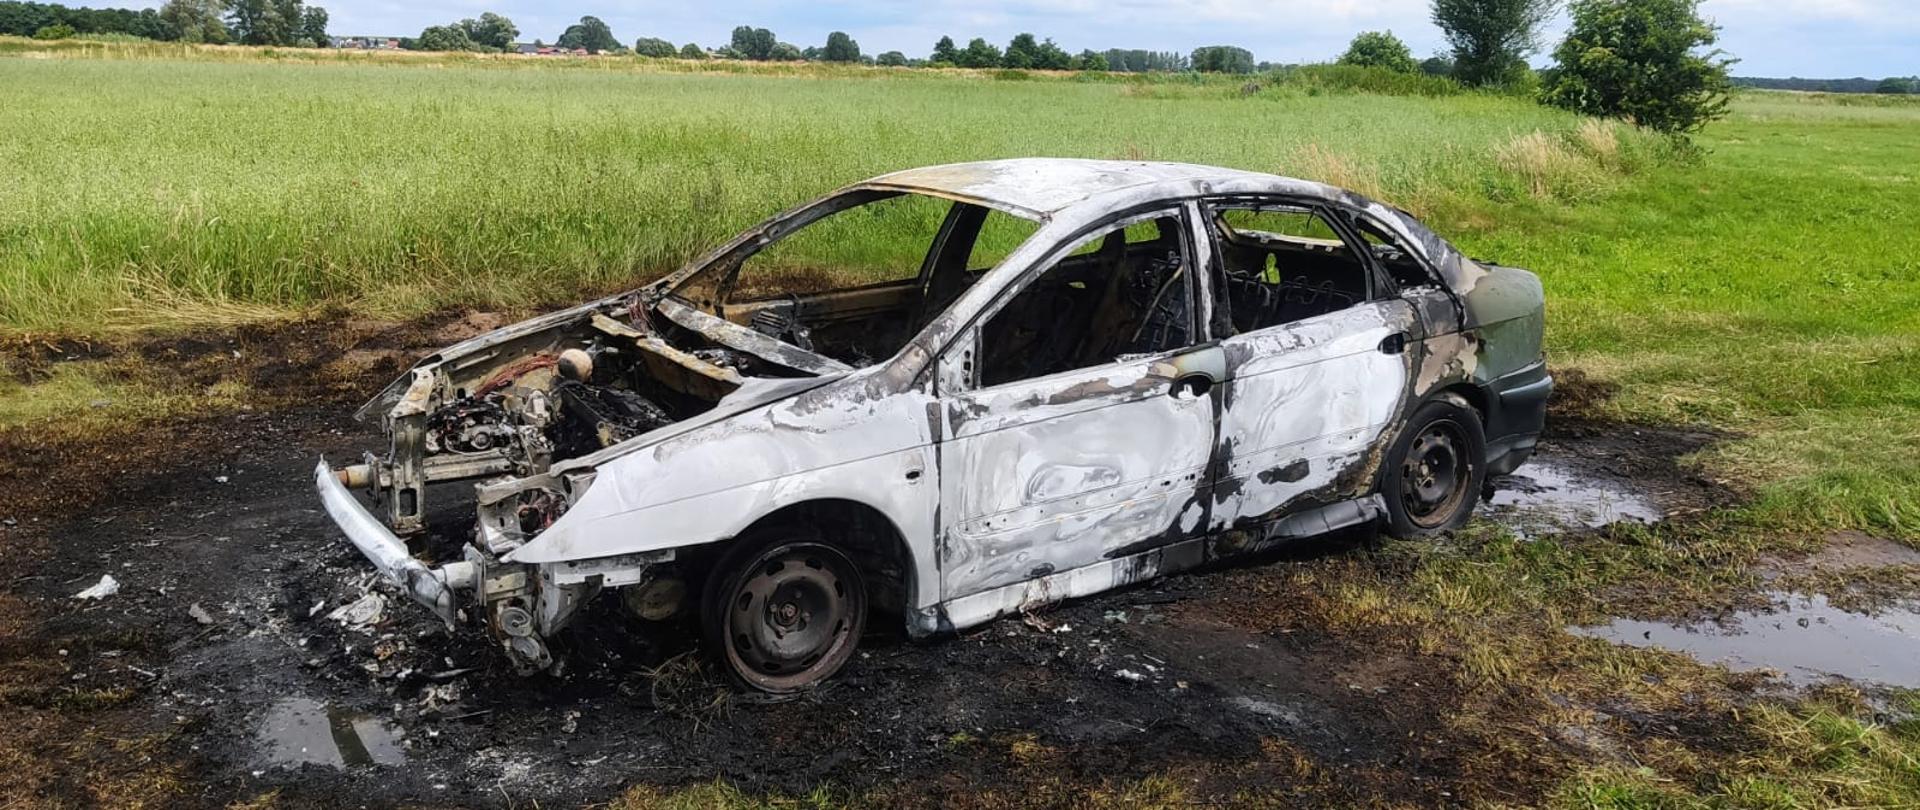 Zdjęcie przedstawia doszczętnie spalony samochód osobowy. Trawa otaczająca samochód jest również wypalona.